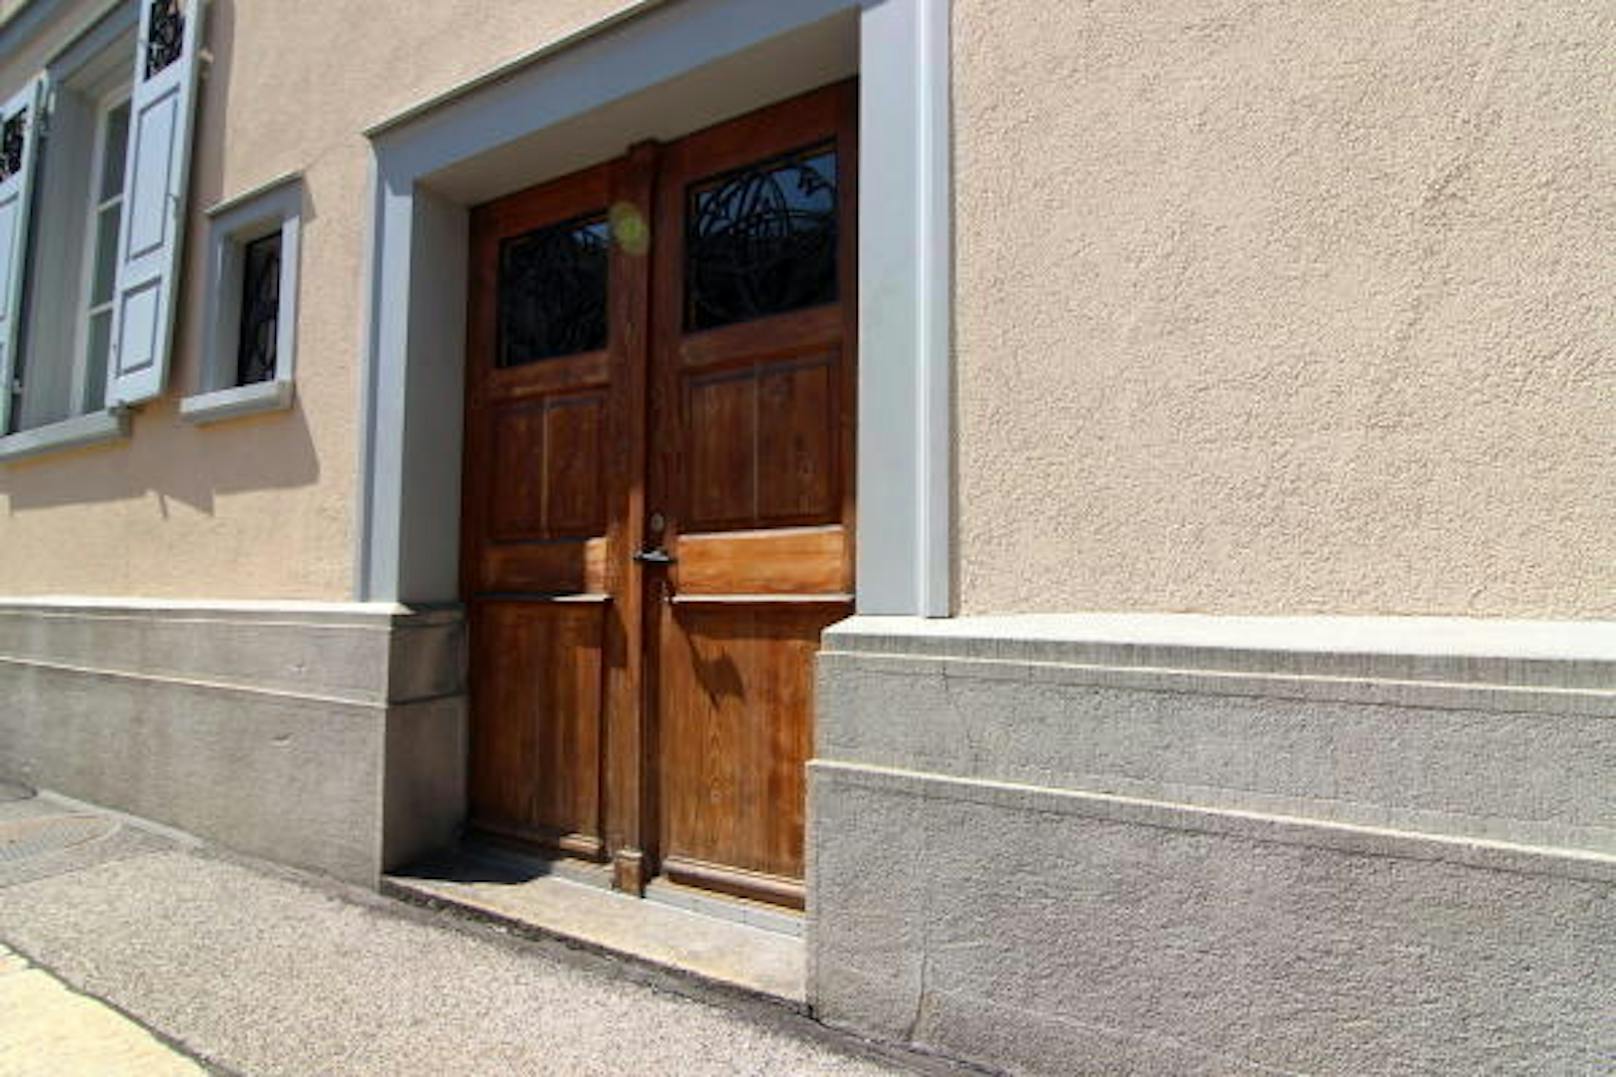 Eingangs- sowie Hintertüren mehrerer Häuser werden dort regelmäßig als Pissoir missbraucht.